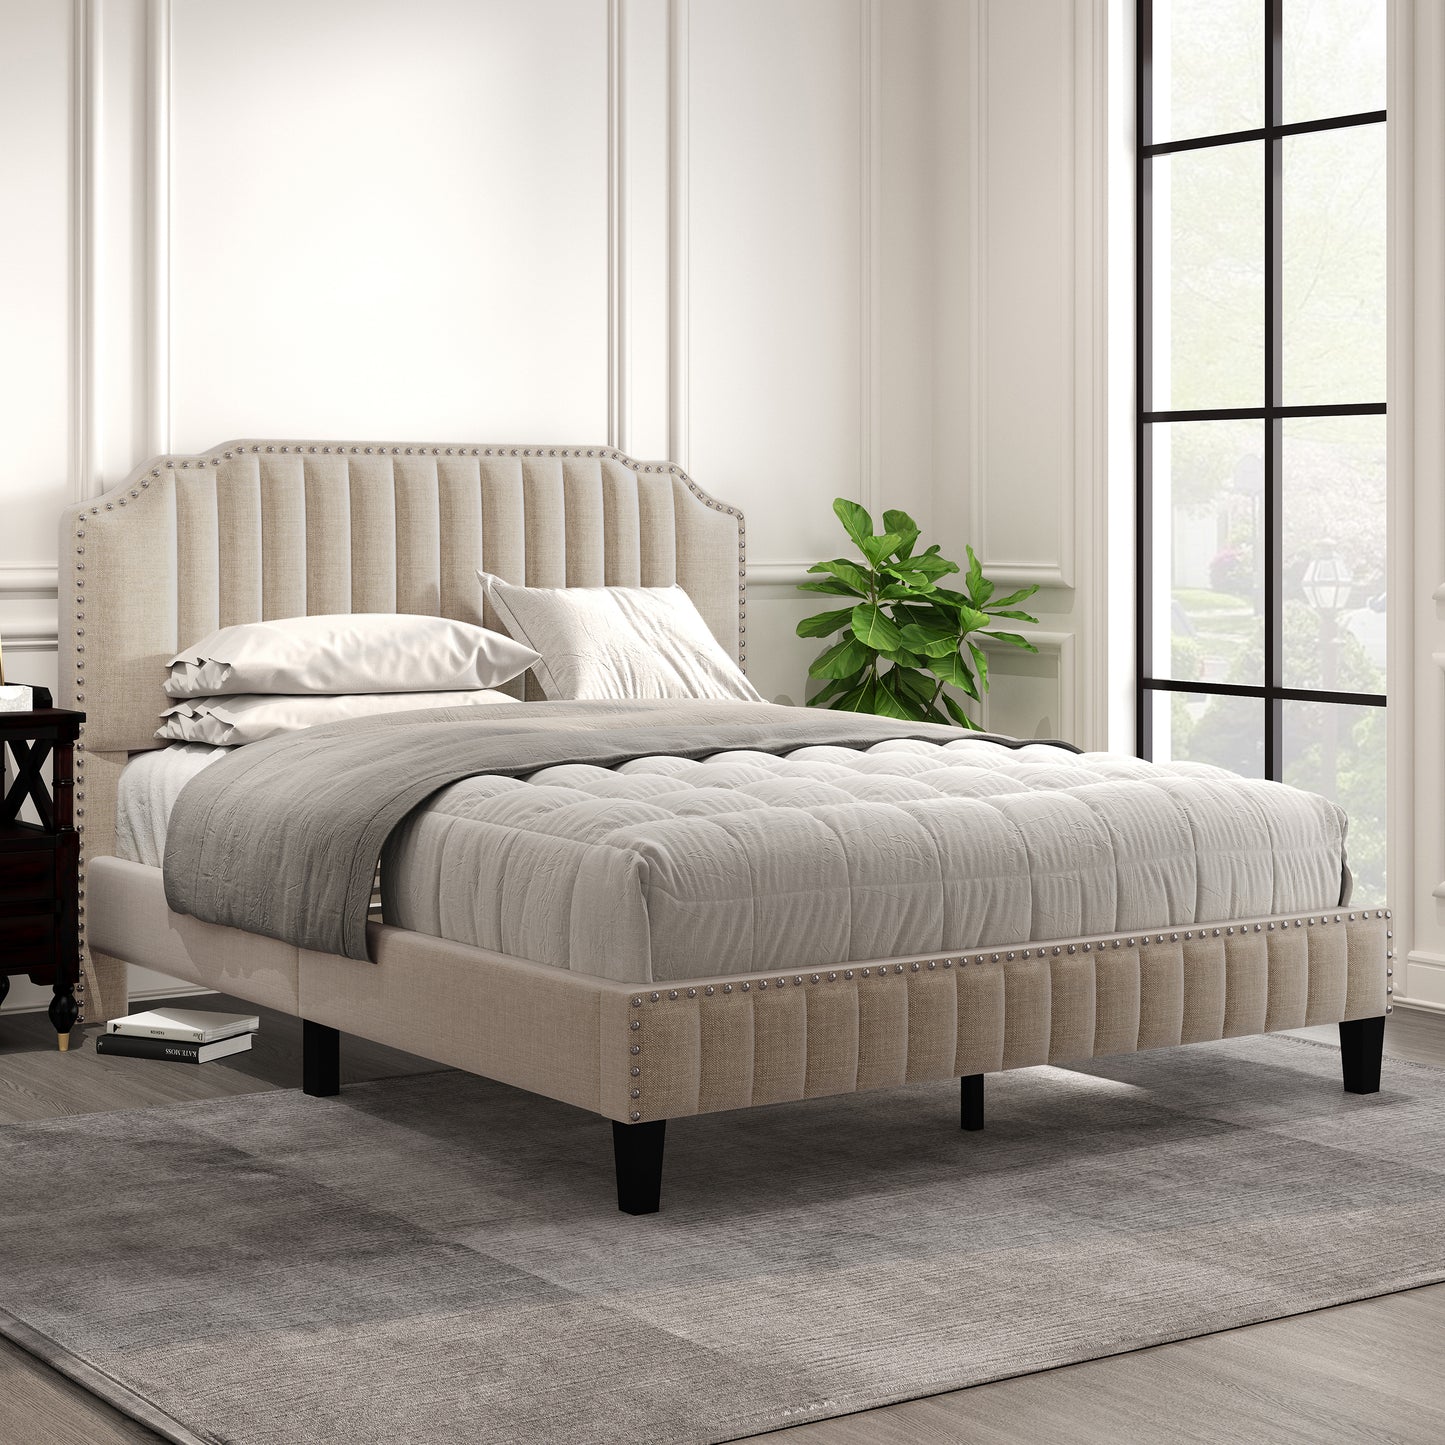 Modern Linen Curved Upholstered Platform Bed , Solid Wood Frame , Nailhead Trim, Beige (Queen)